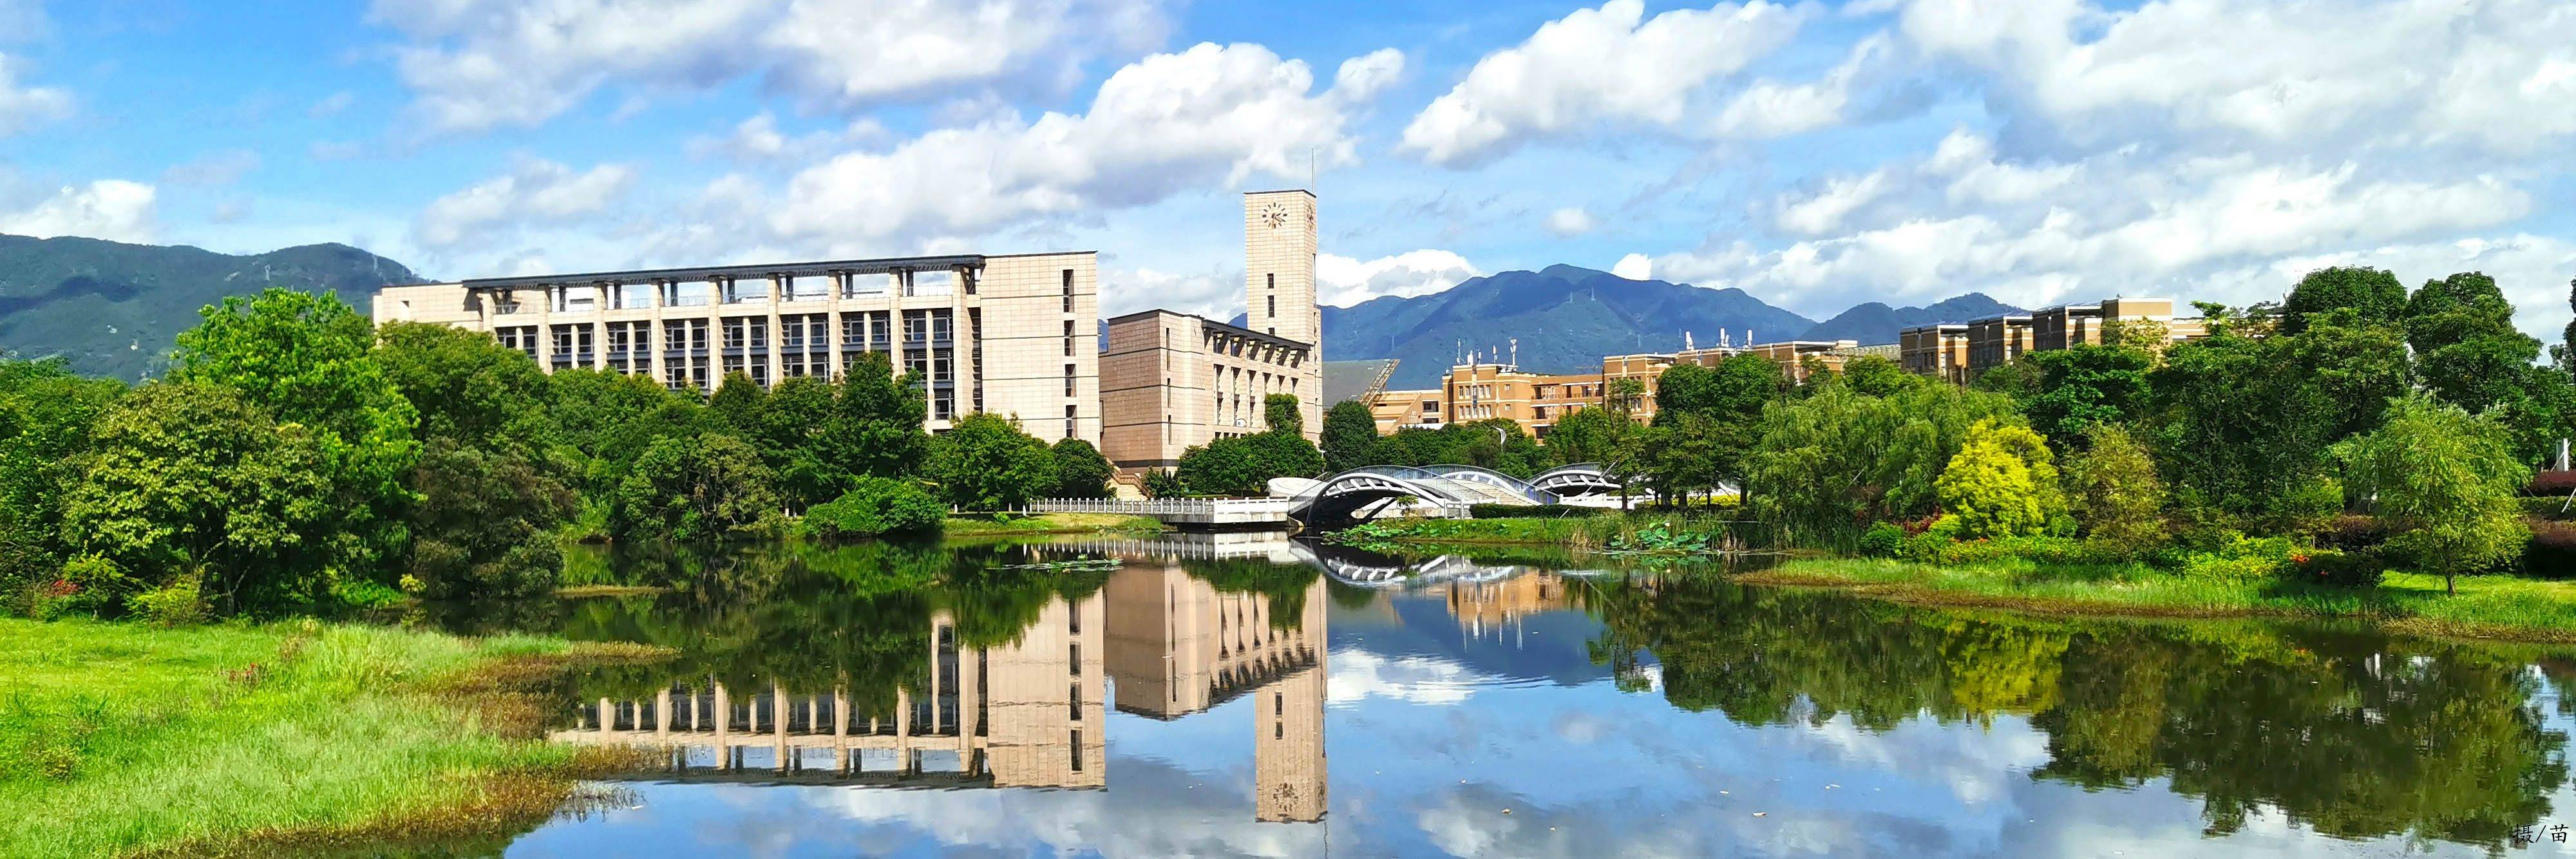 福州大学 美景图片